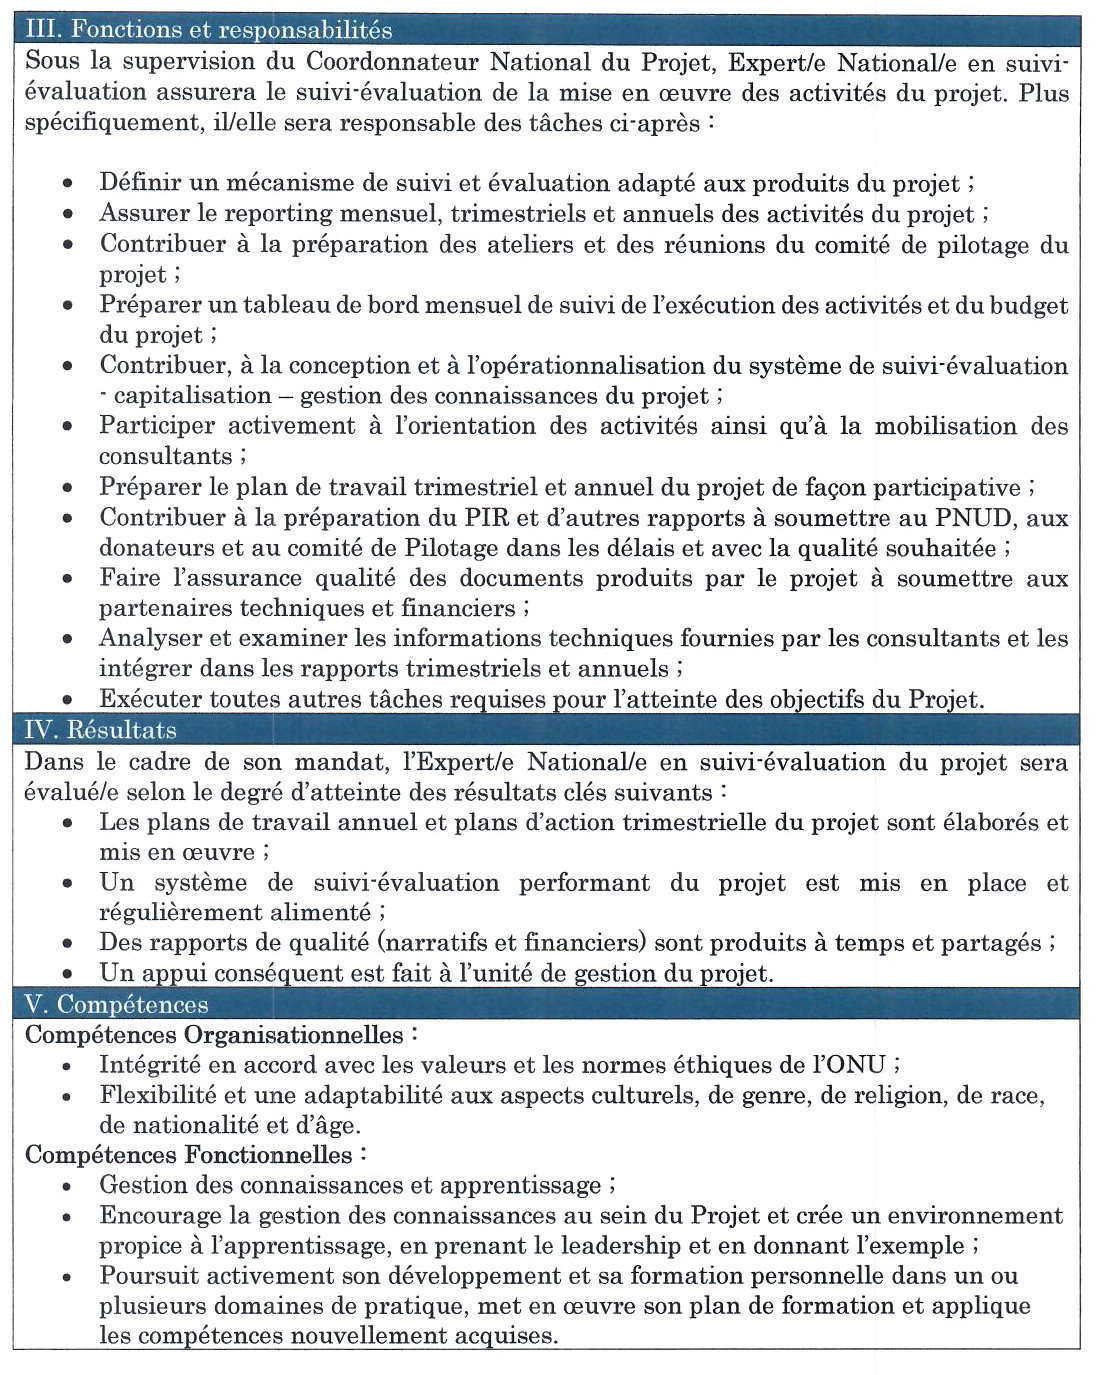 Avis de recrutement D'un Expert/e National/e en Suivi-évaluation du projet « Renforcement de la résilience et de capacités d'adaptation des communautés les plus vulnérables au changement climatique en Guinée Forestière » | Page 2